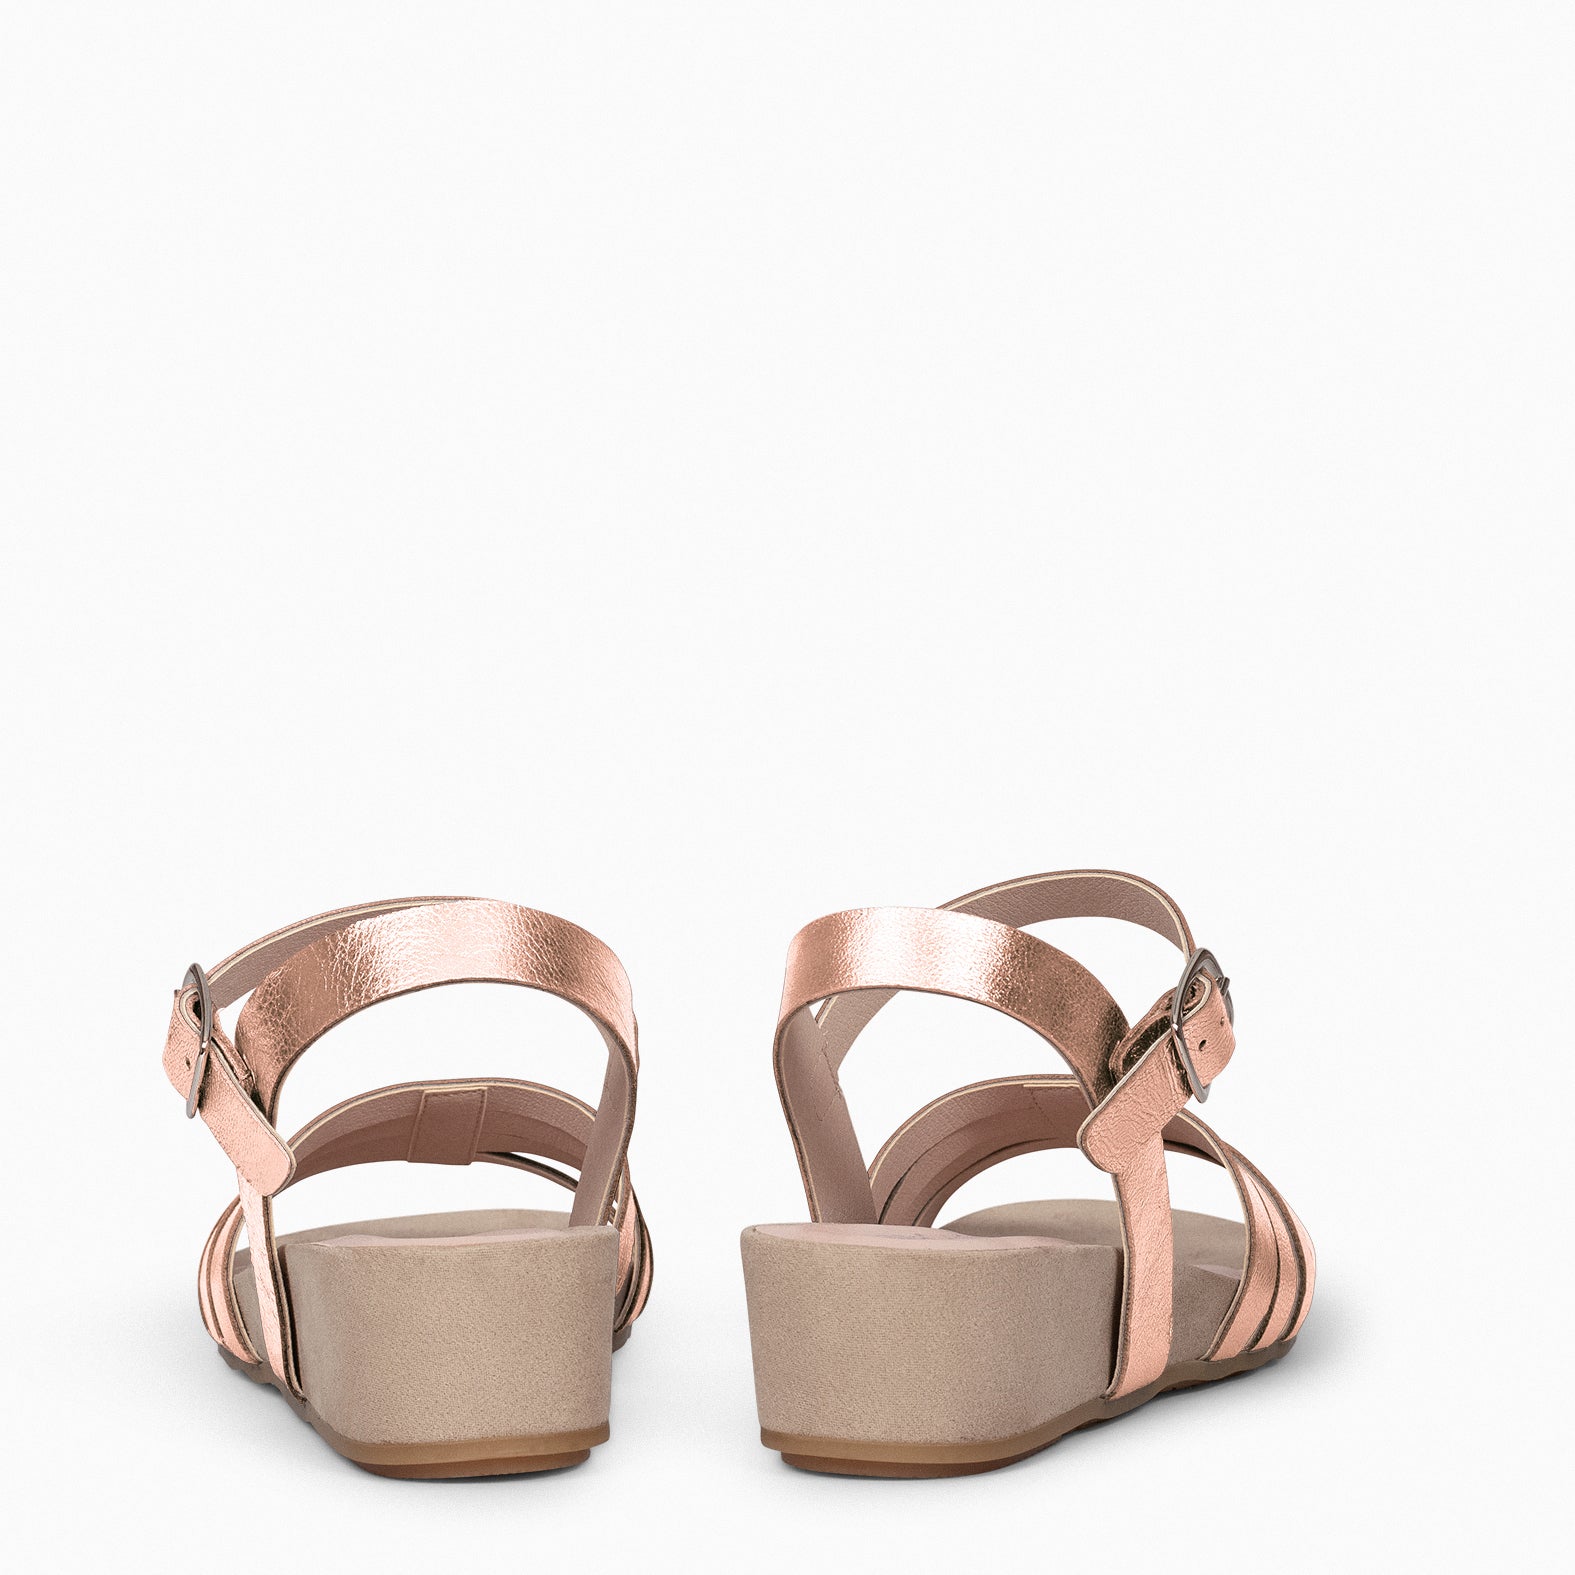 MESINA – ROSE Wedge sandal with metallic straps 